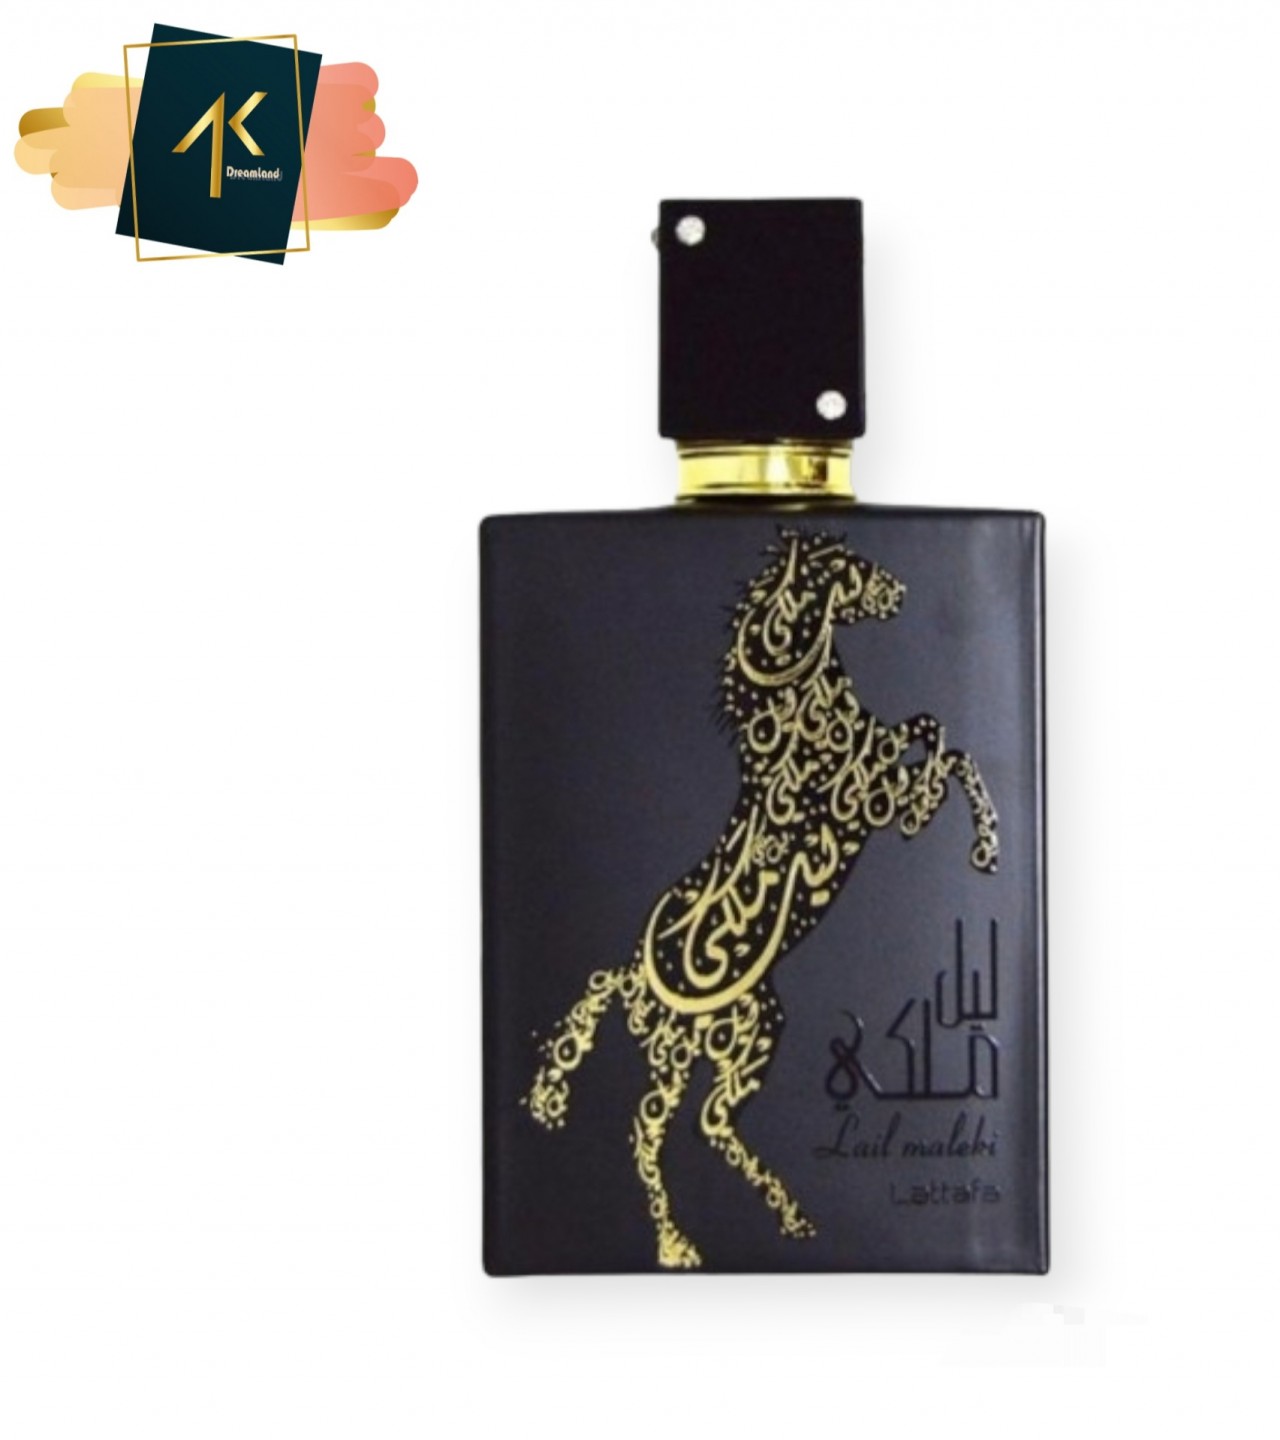 Lattafa Lail Maleki Arabic 100ml EU de Perfume